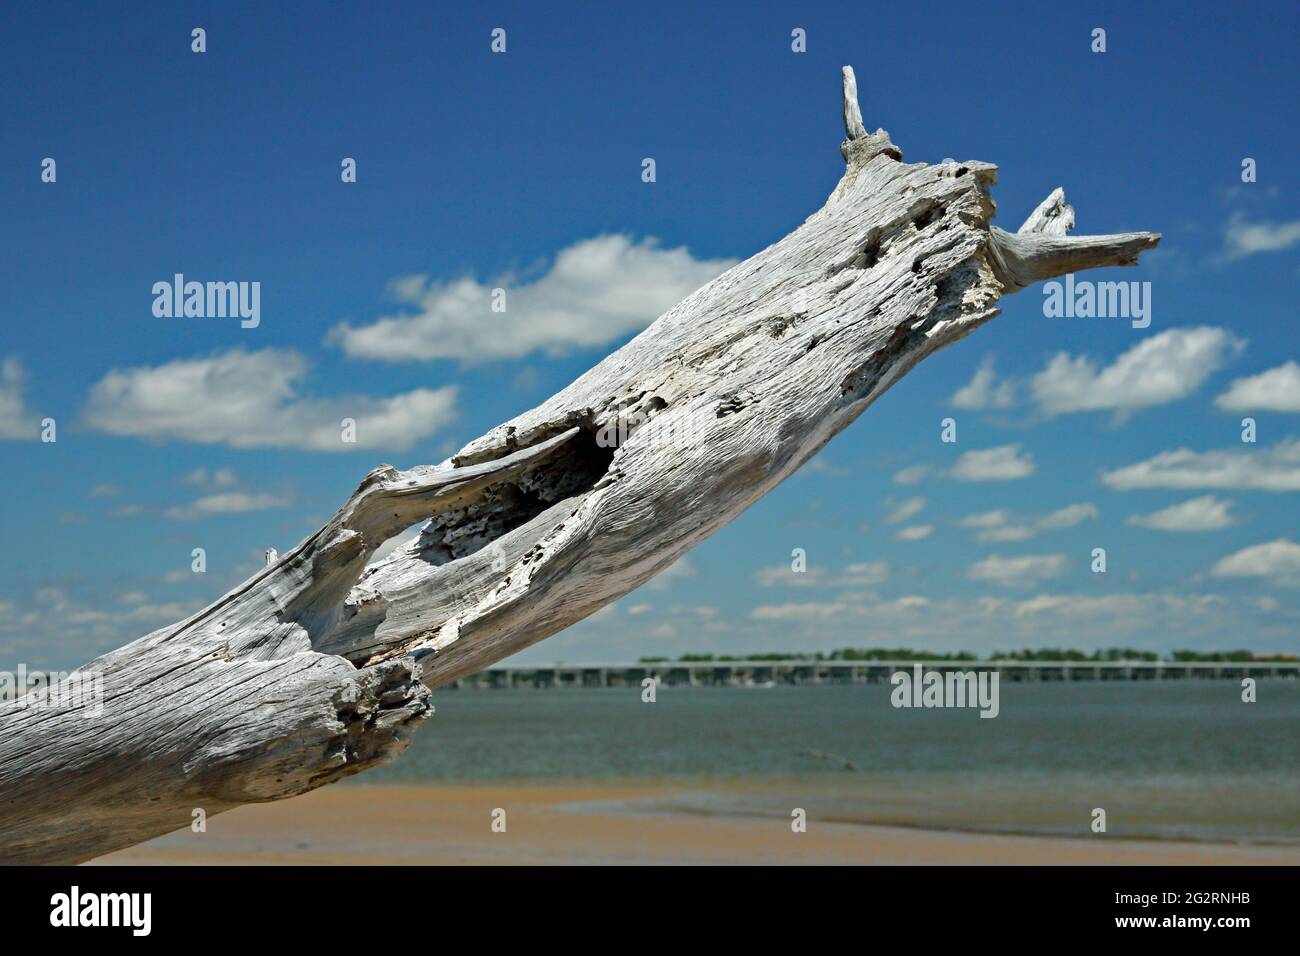 Rama grande de madera de driftwood que se extiende hacia el cielo nublado Foto de stock